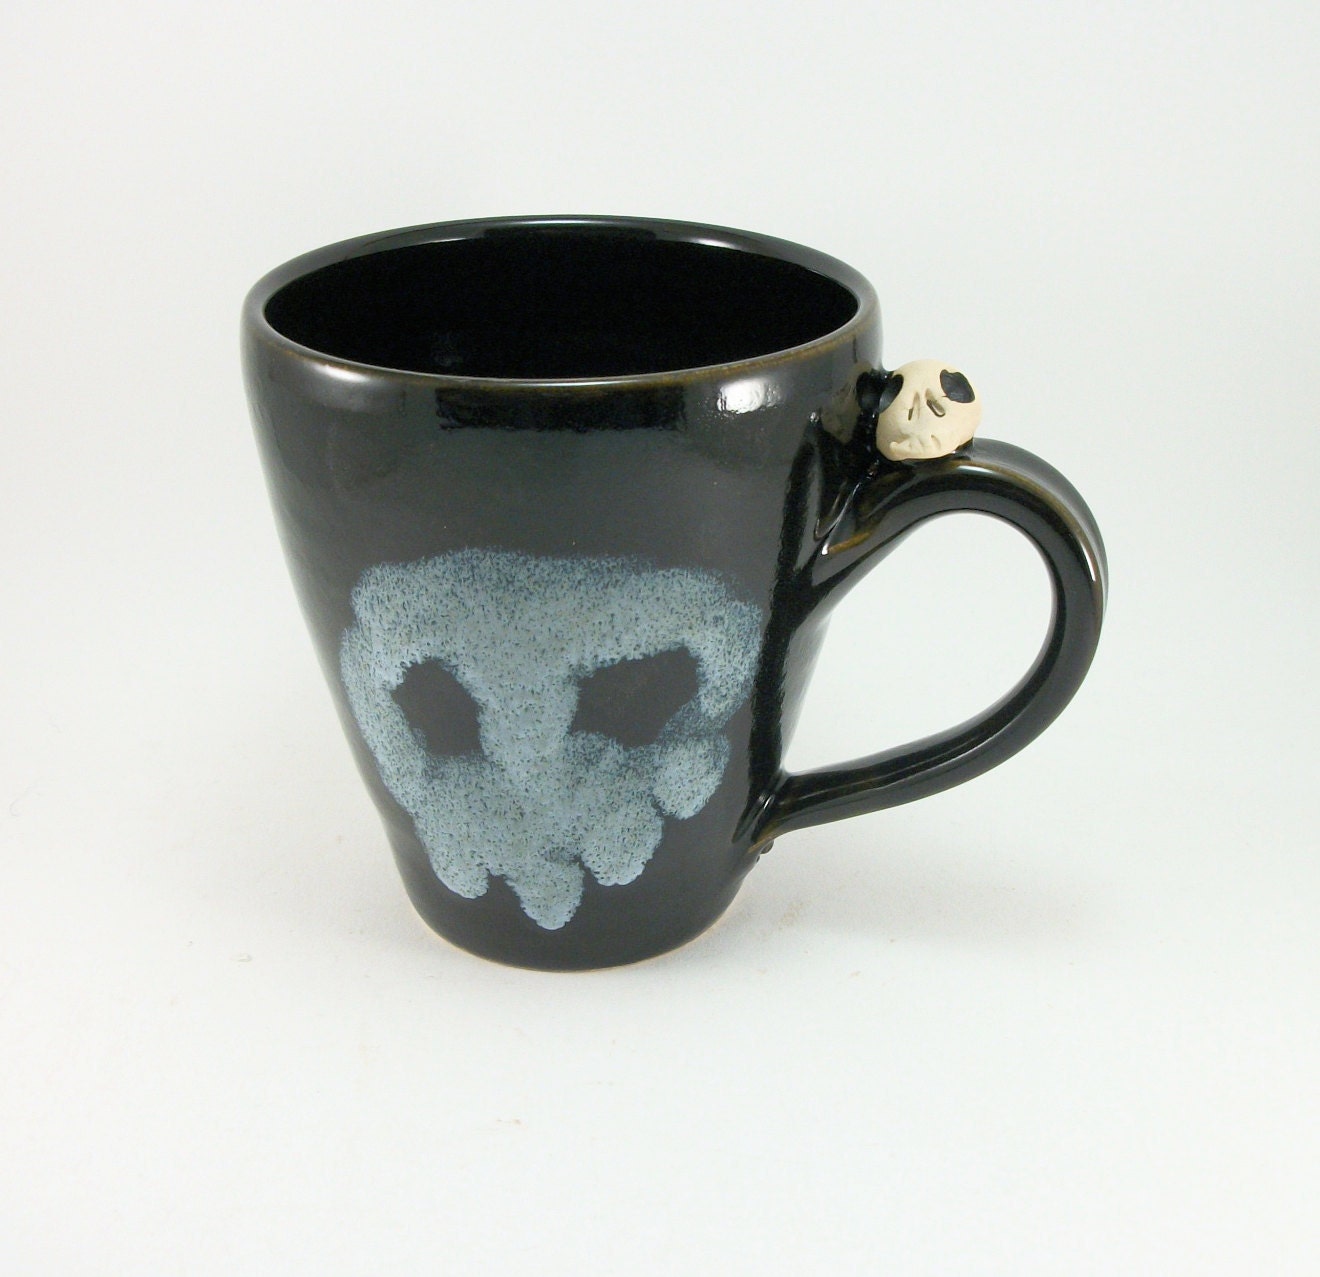 skull mug